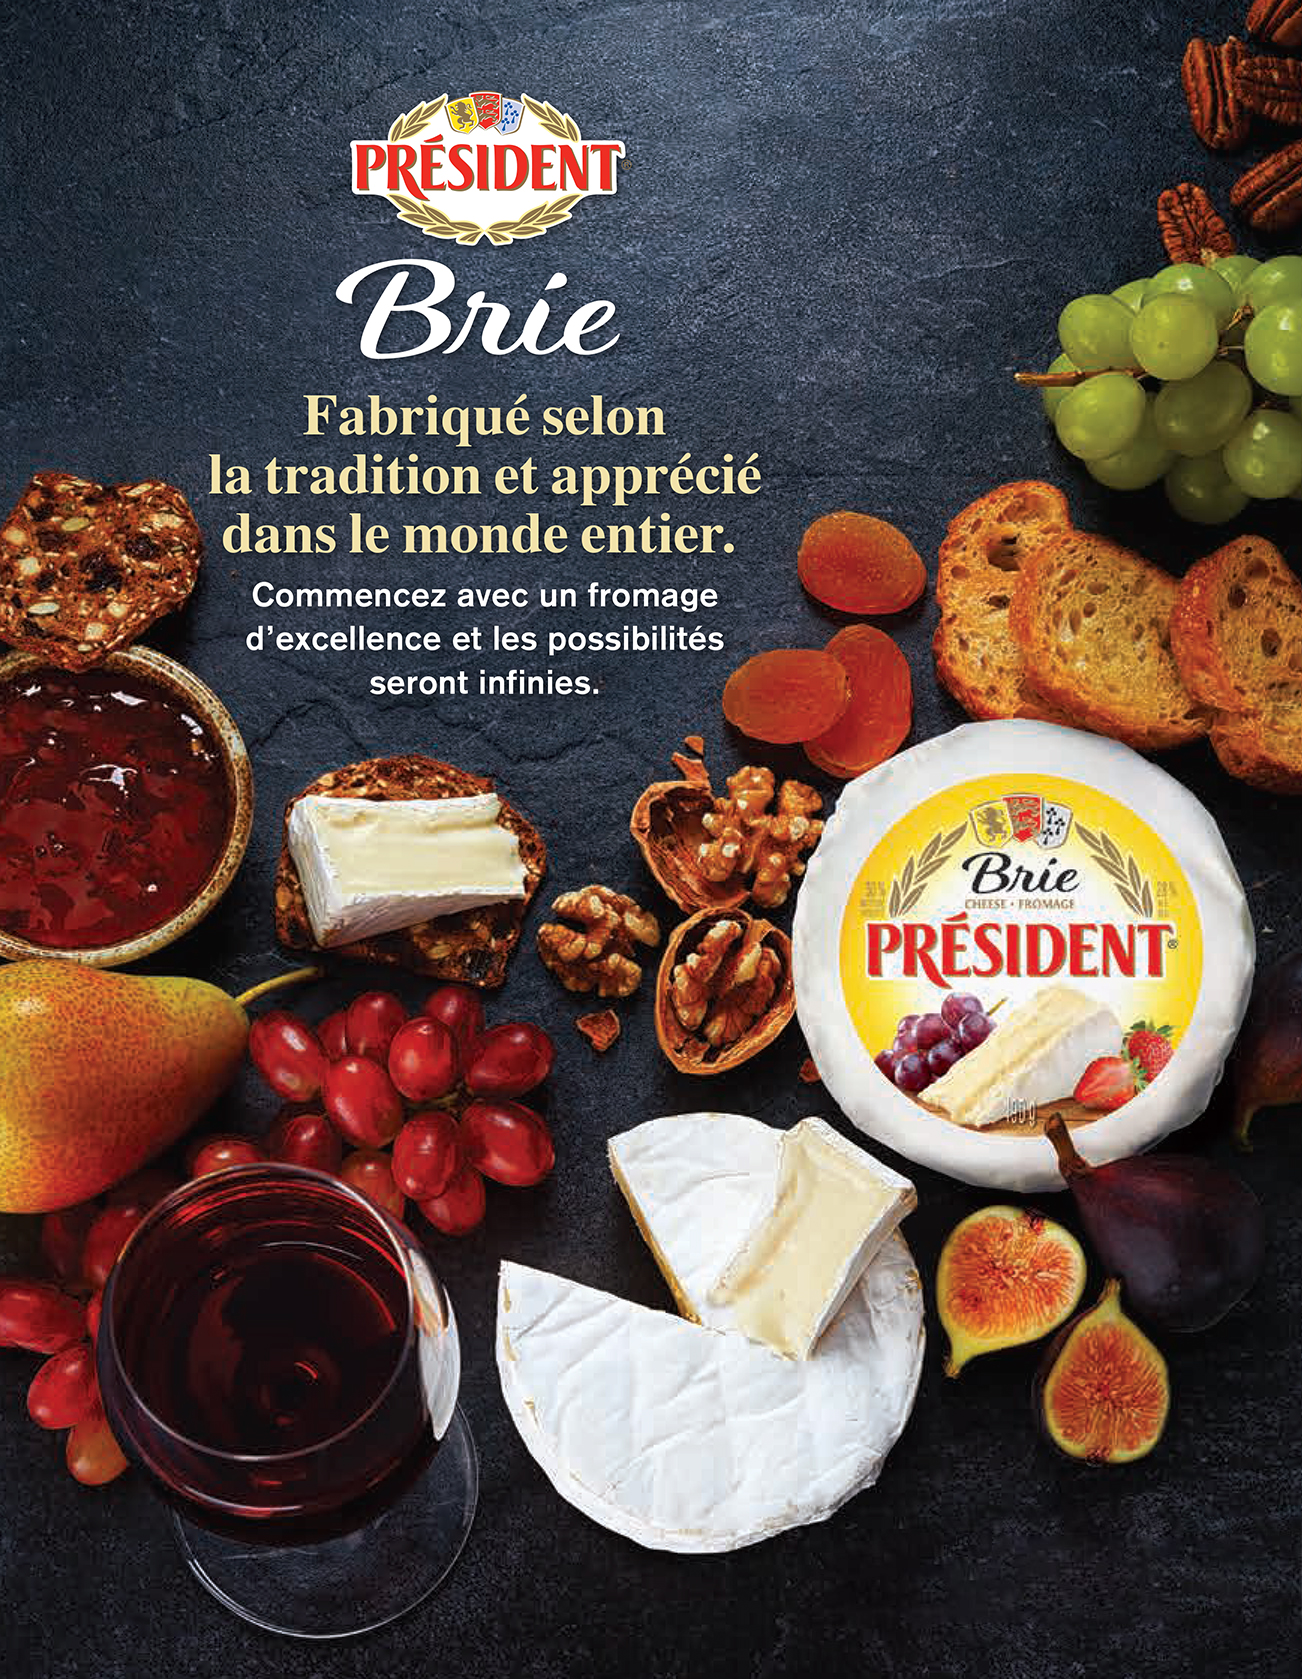 Brie Fabrique selon la tradition et apprecie dans le monde entier.